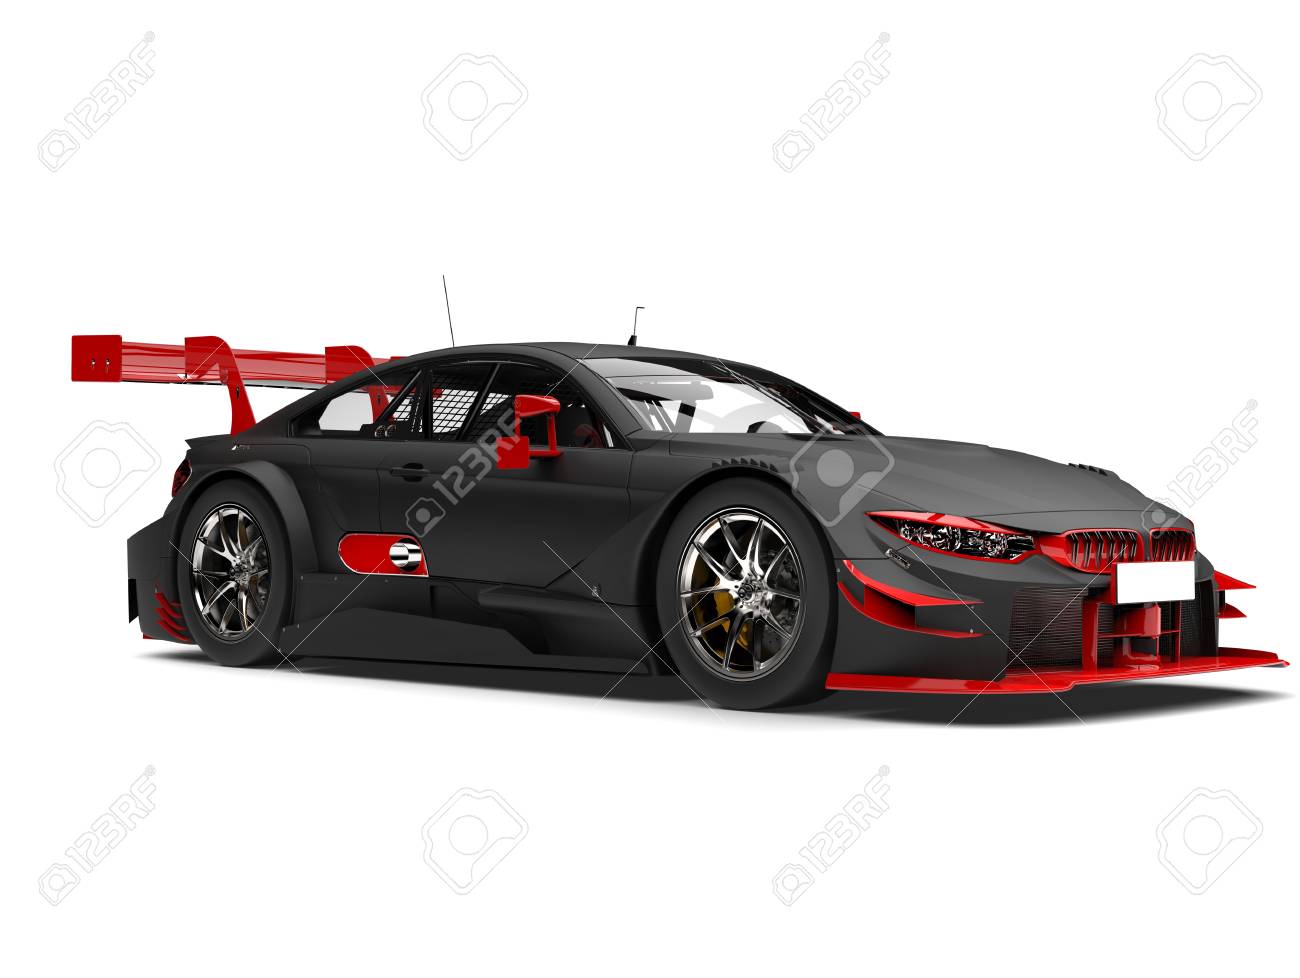 89929023-super-voiture-de-course-noire-mat-avec-des-d-tails-rouges.jpg